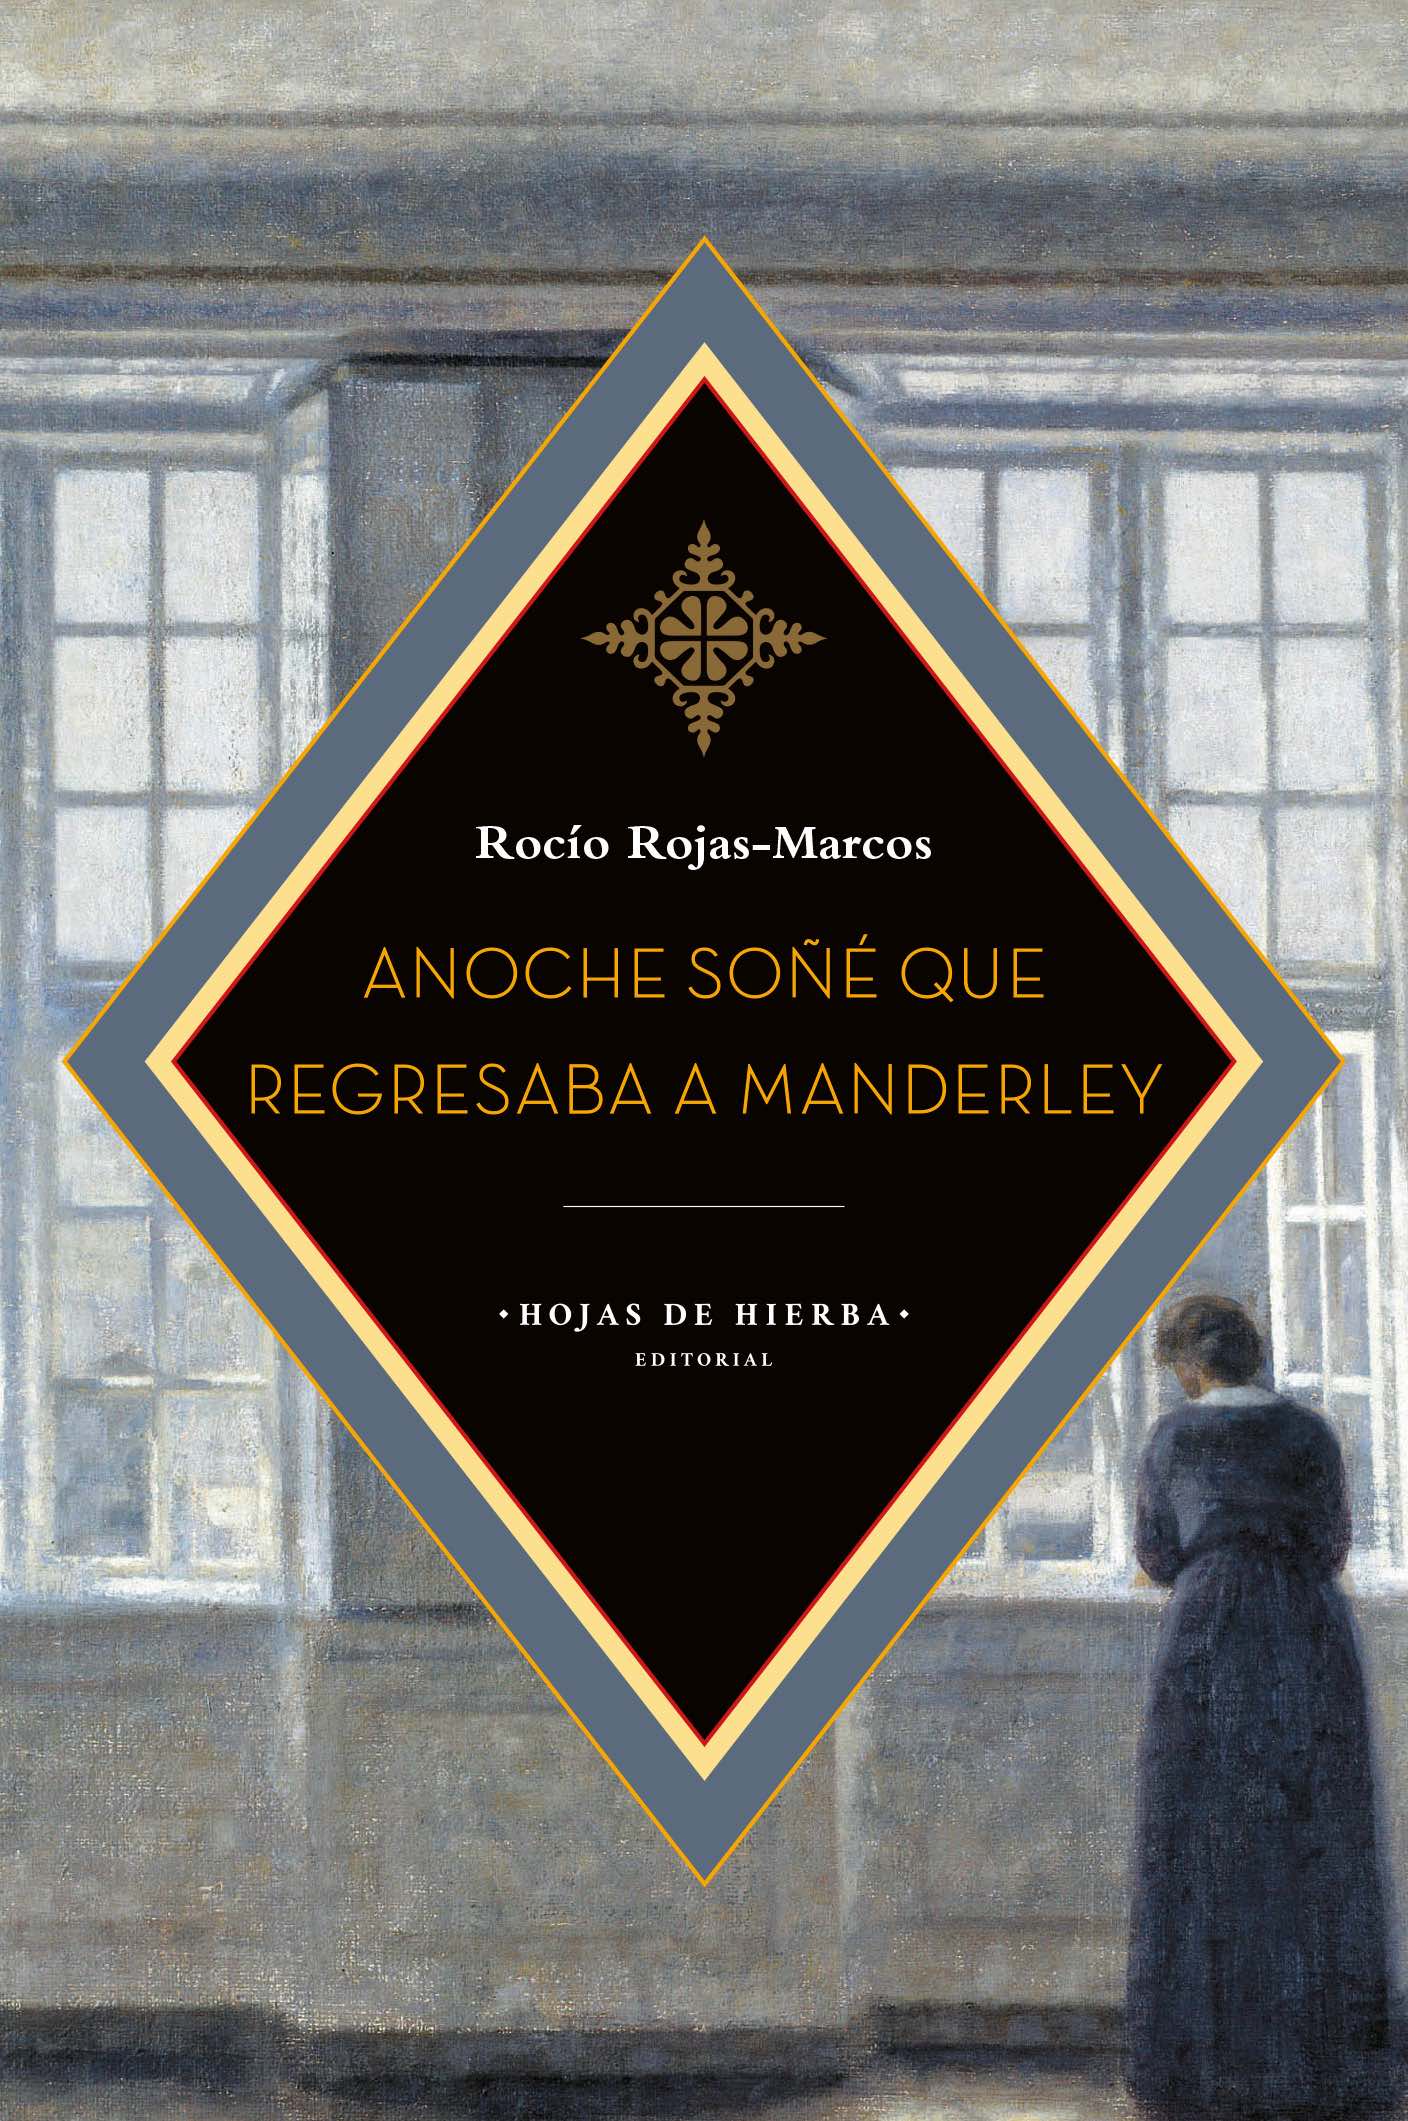 4 poemas de Anoche soñé que regresaba a Manderley, de Rocío Rojas-Marcos